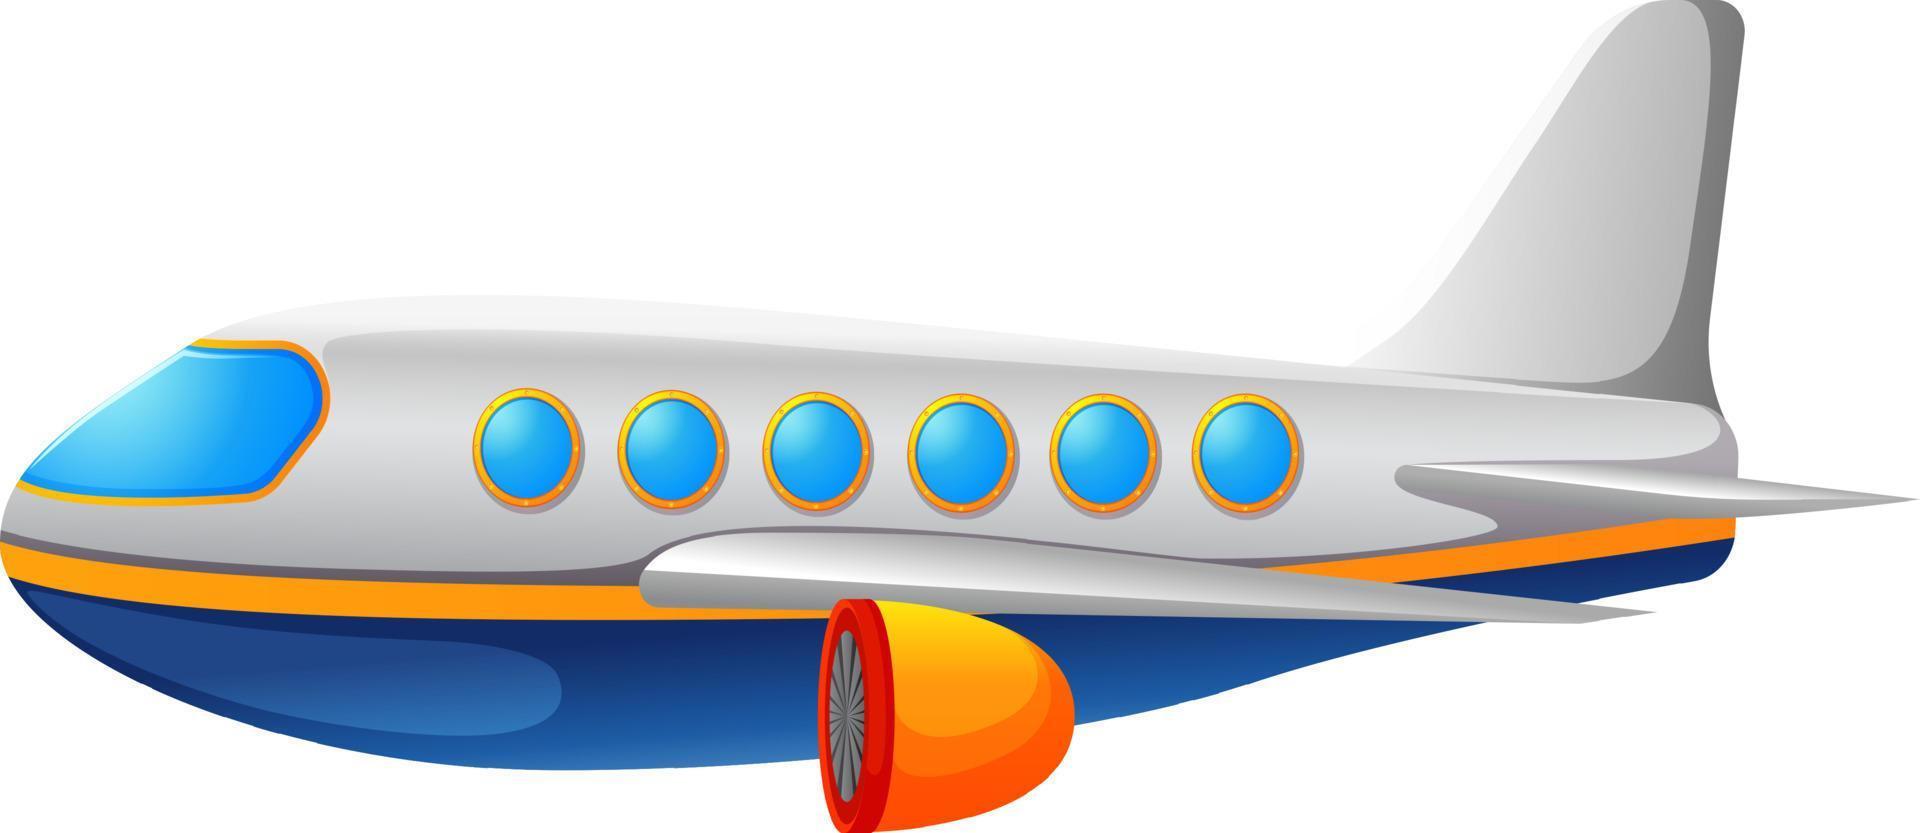 ilustração de um avião comercial em um fundo branco vetor